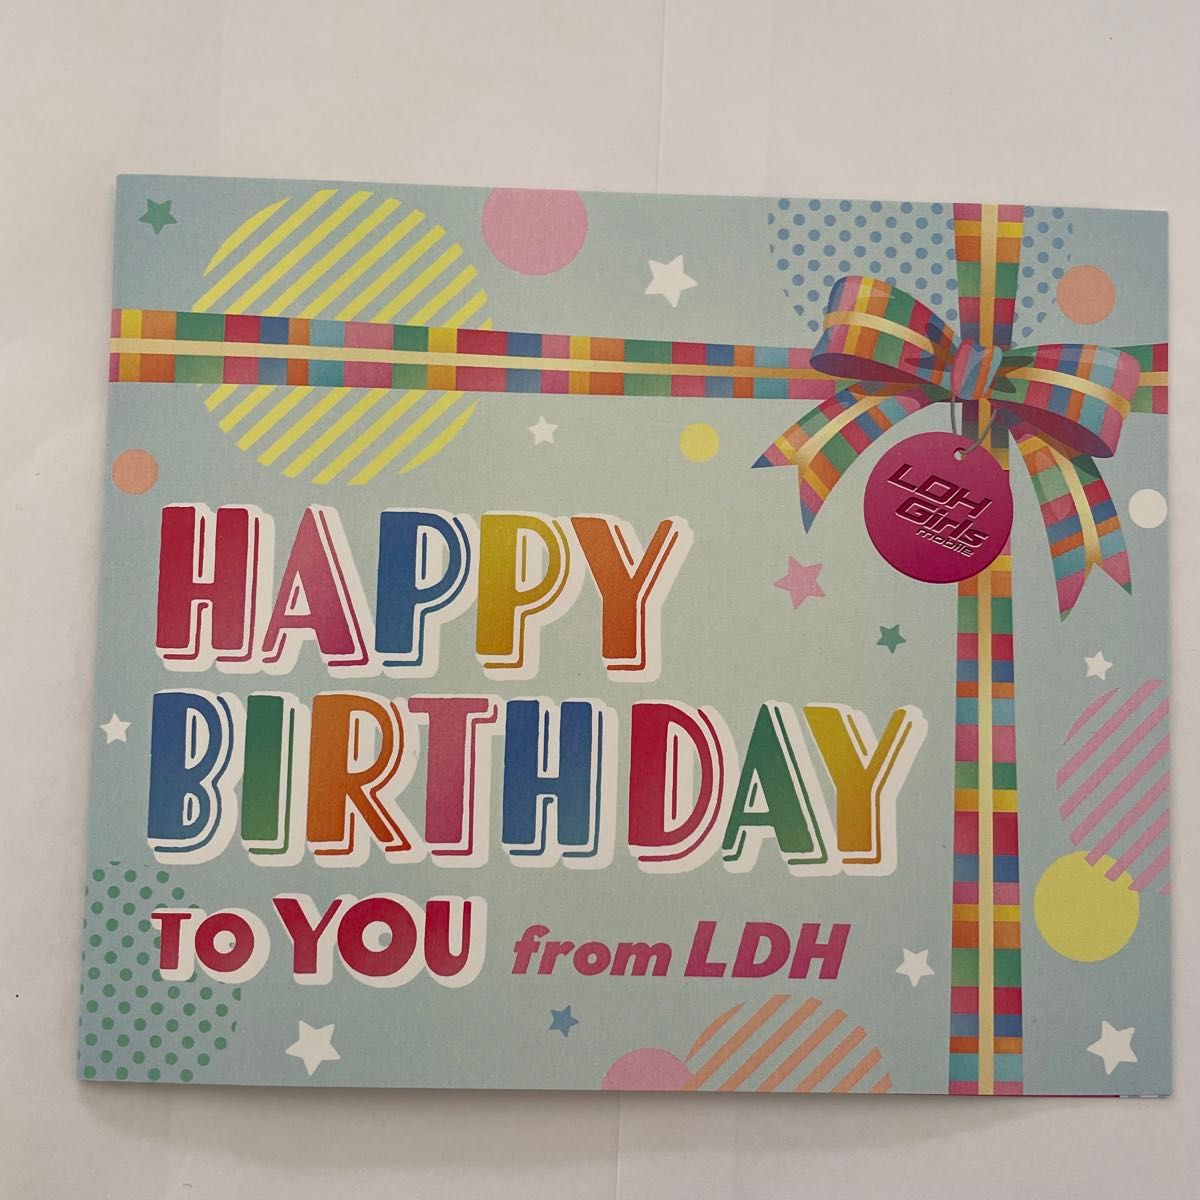 LDH BIRTHDAY CARD